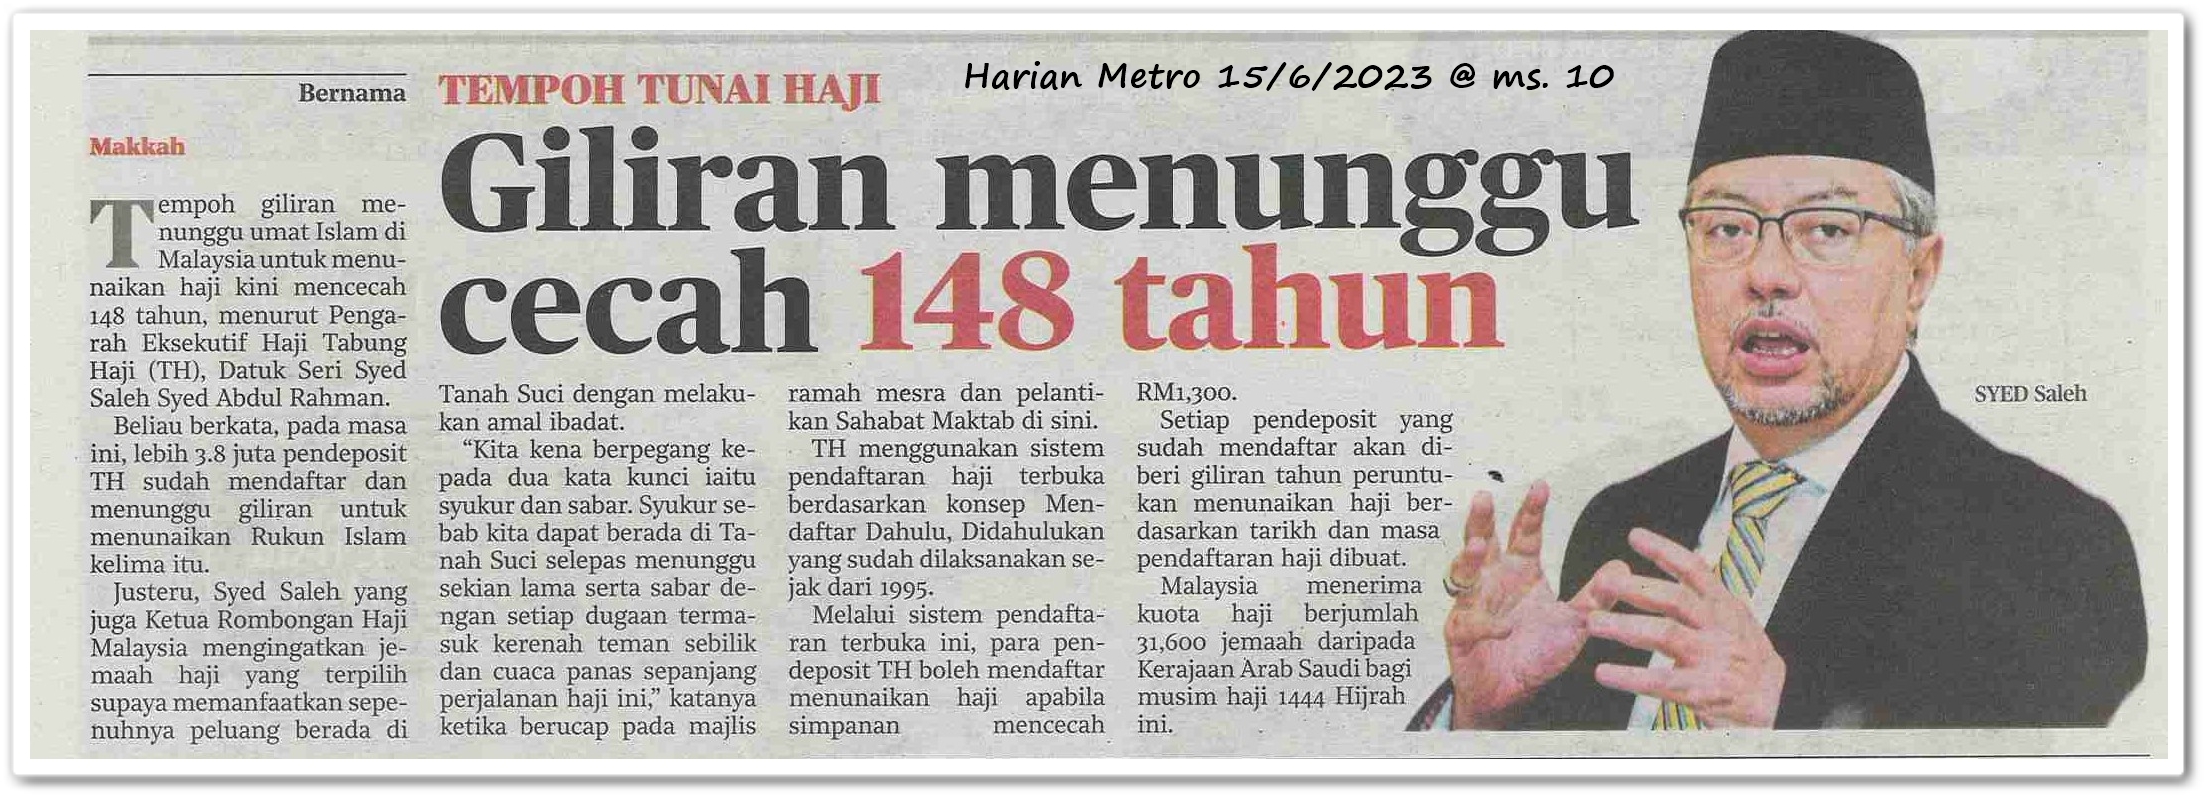 Giliran menunggu cecah 148 tahun ; Tempoh tunai haji - Keratan akhbar Harian Metro 15 Jun 2023